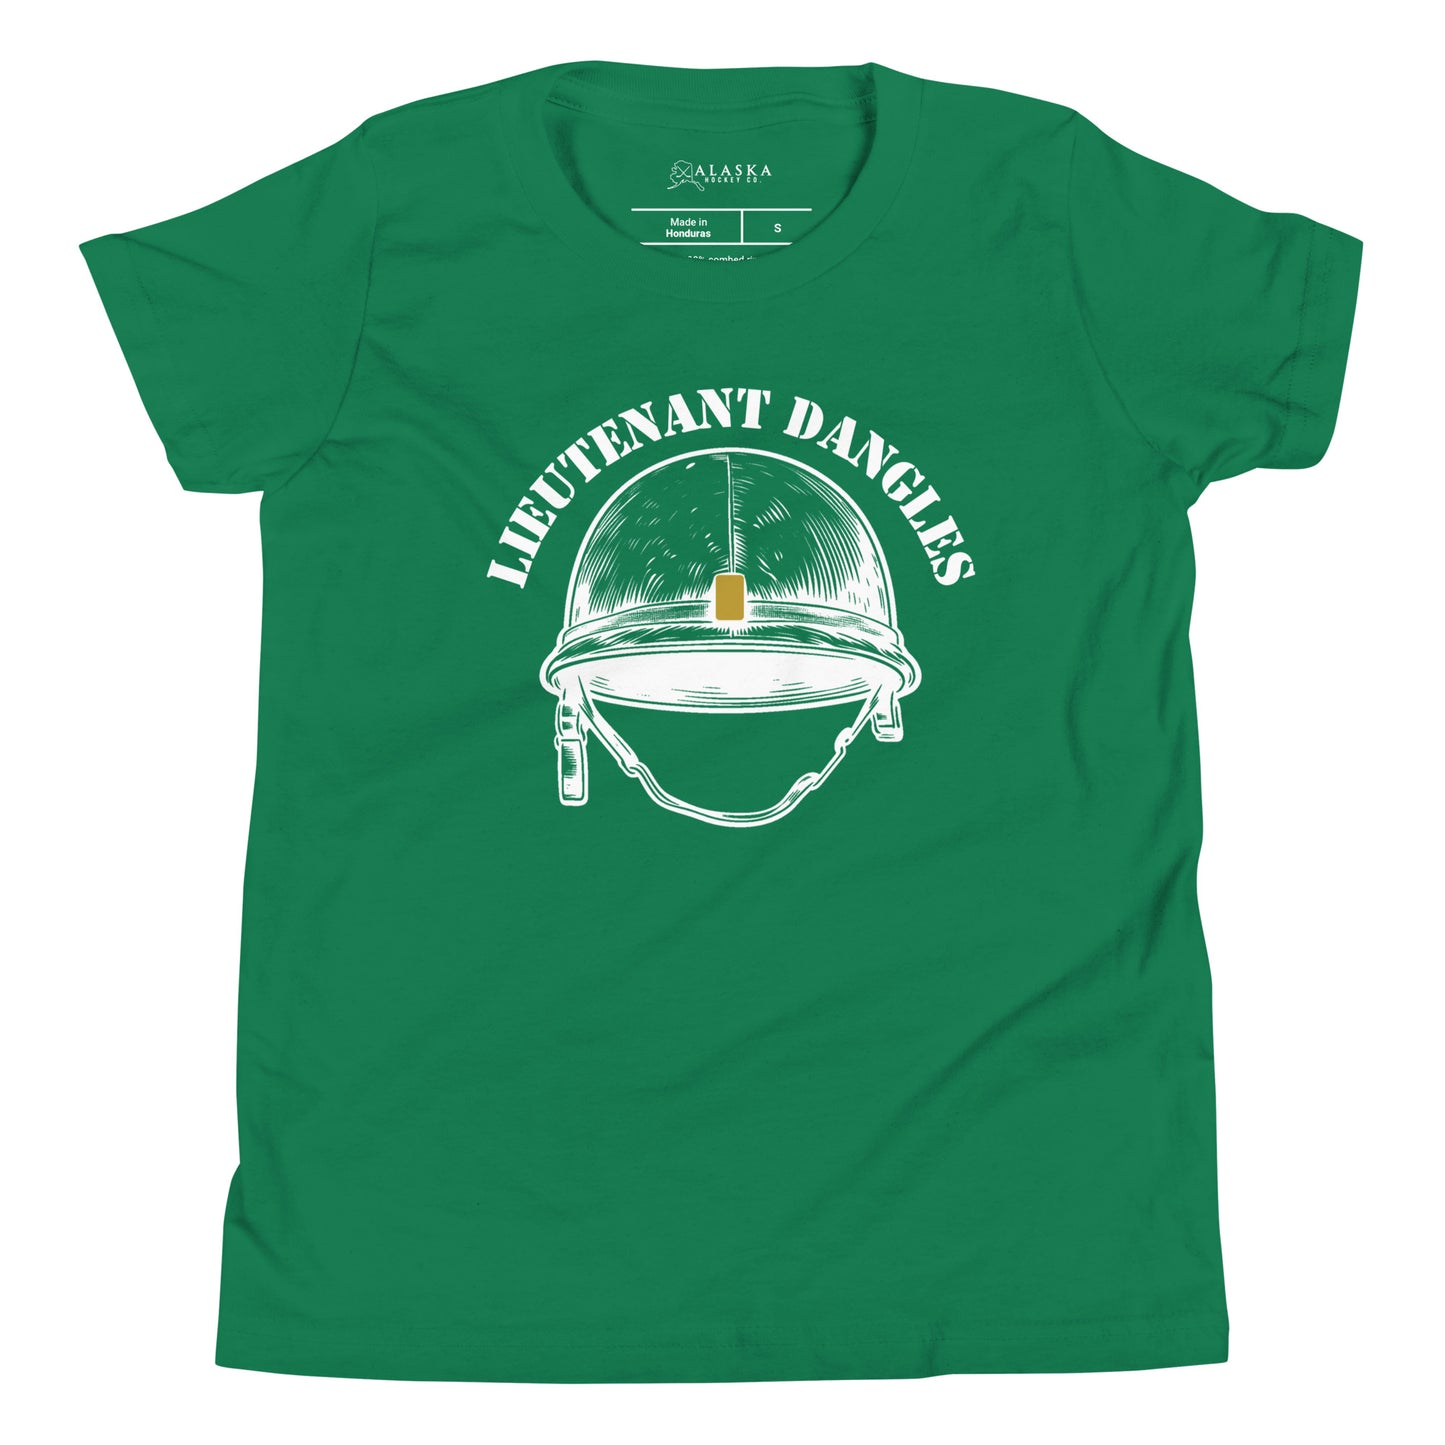 Lieutenant Dangles Kids T-Shirt